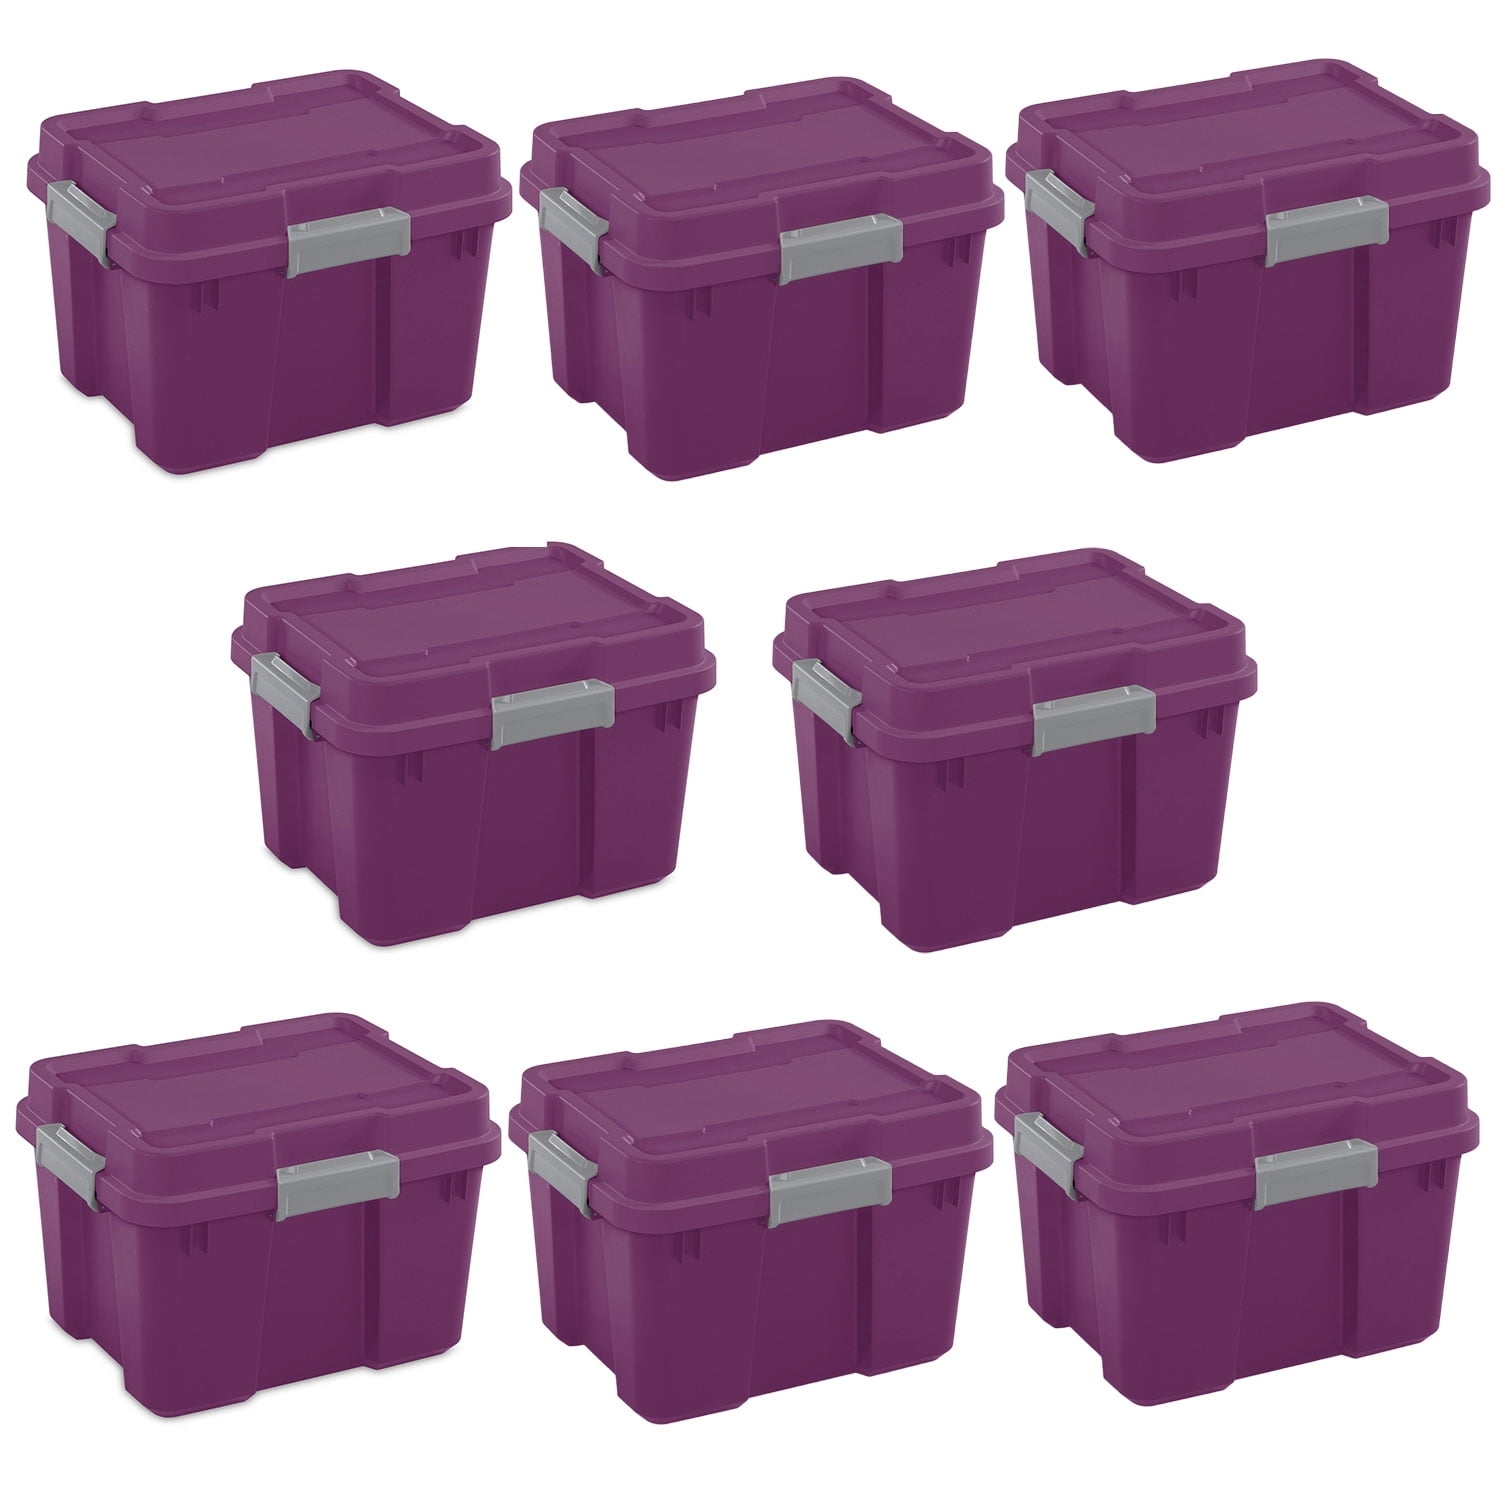 Sterilite 20 Gallon Plastic Home Storage Container Tote Box, Gray/Blue &  Reviews